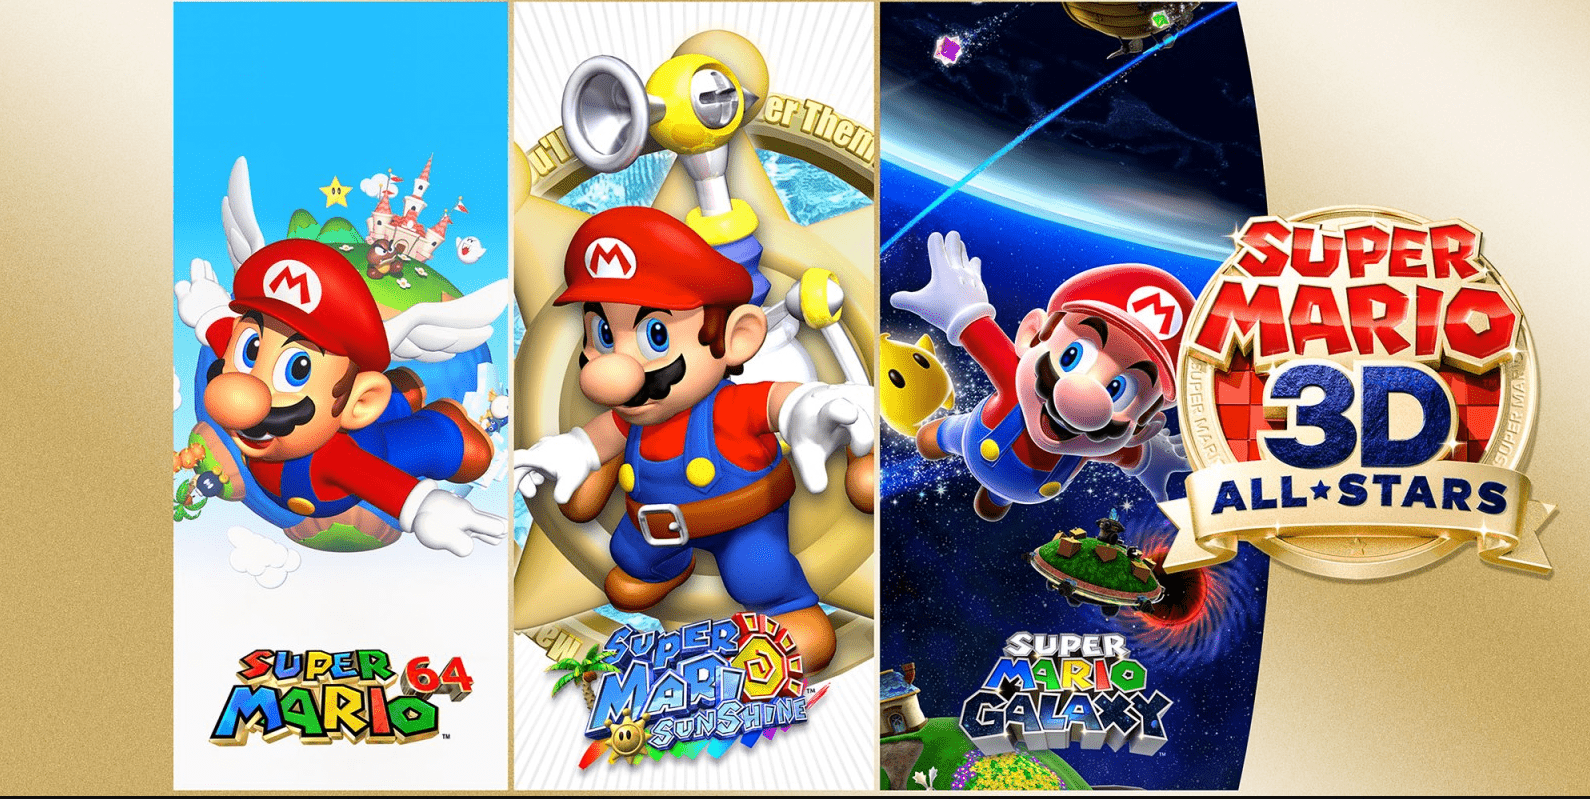 Toko Ritel Inggris Batalkan Semua Pre-Order Super Mario 3D All-Stars